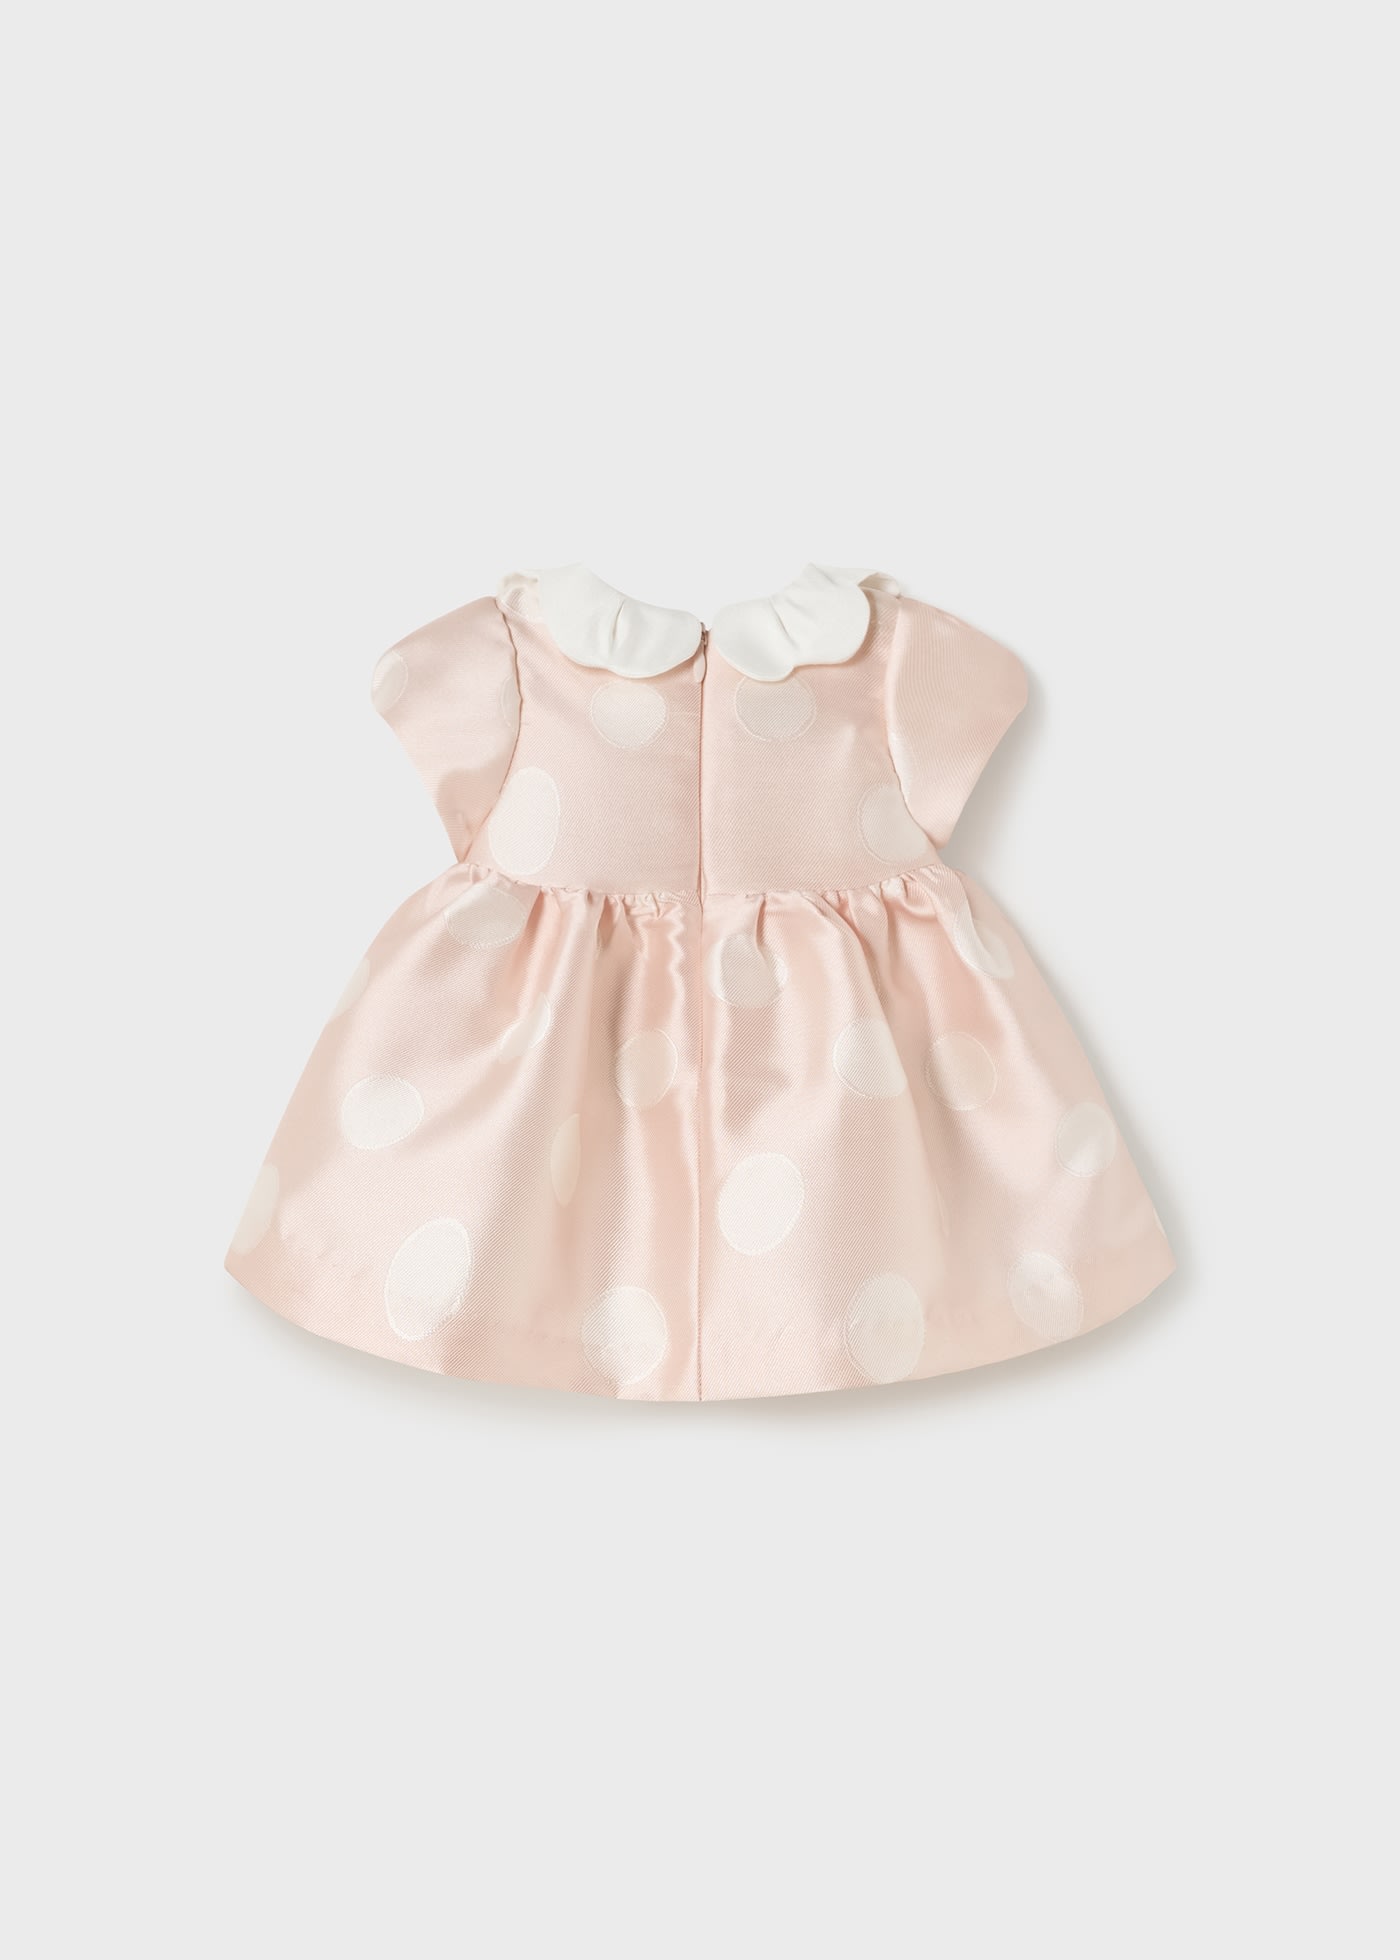 Newborn mikado print dress